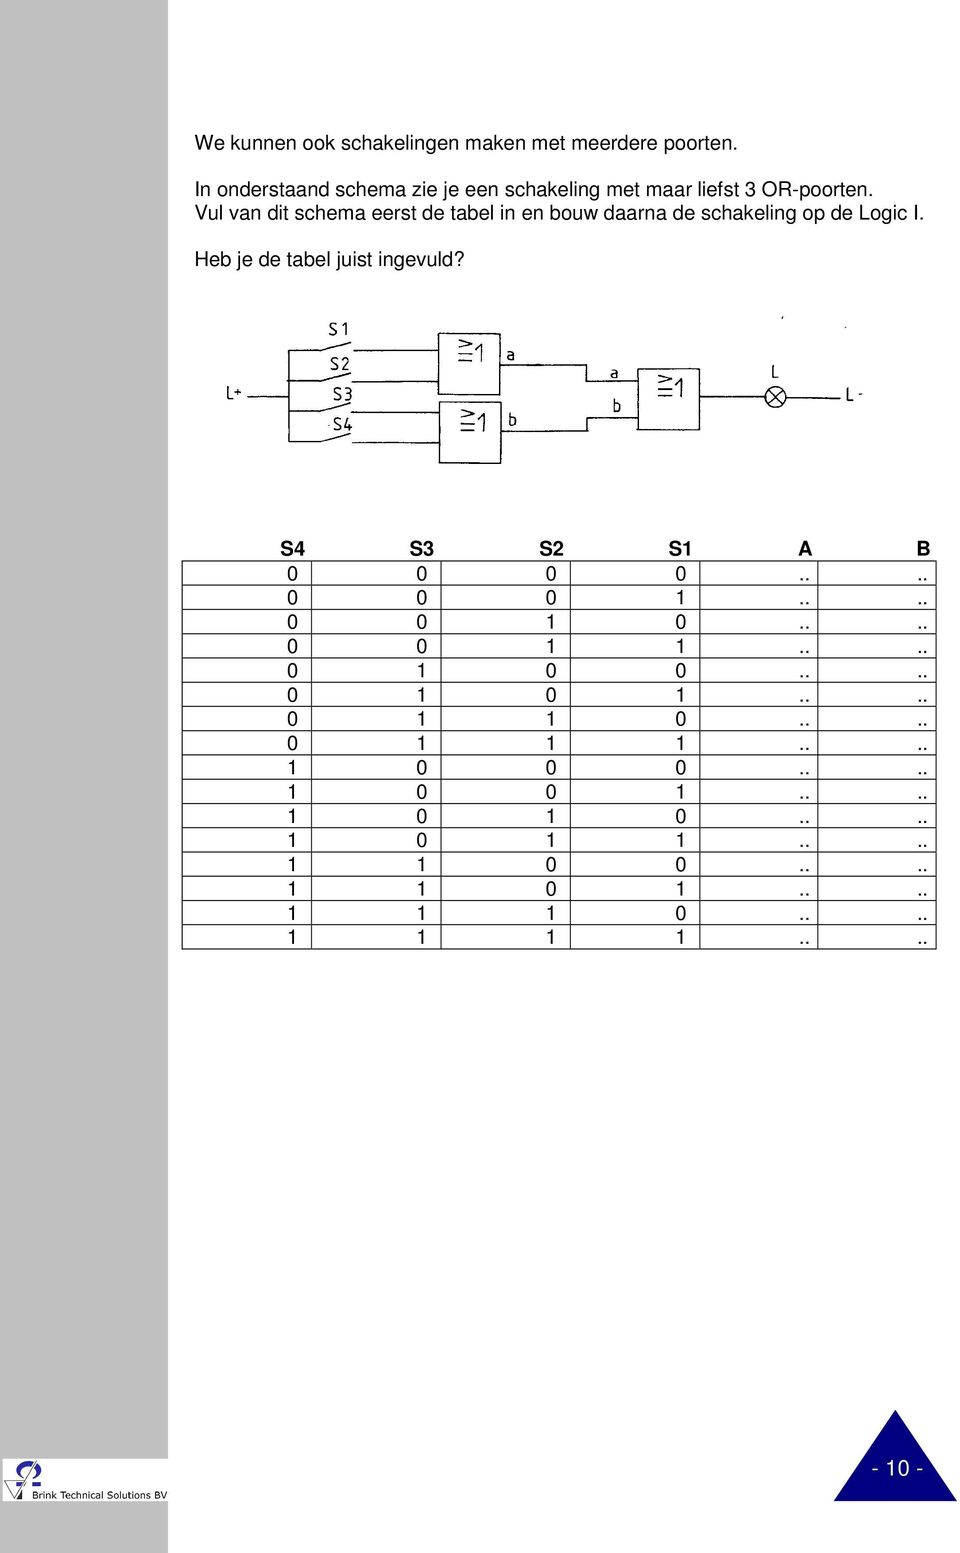 Vul van dit schema eerst de tabel in en bouw daarna de schakeling op de Logic I. Heb je de tabel juist ingevuld?